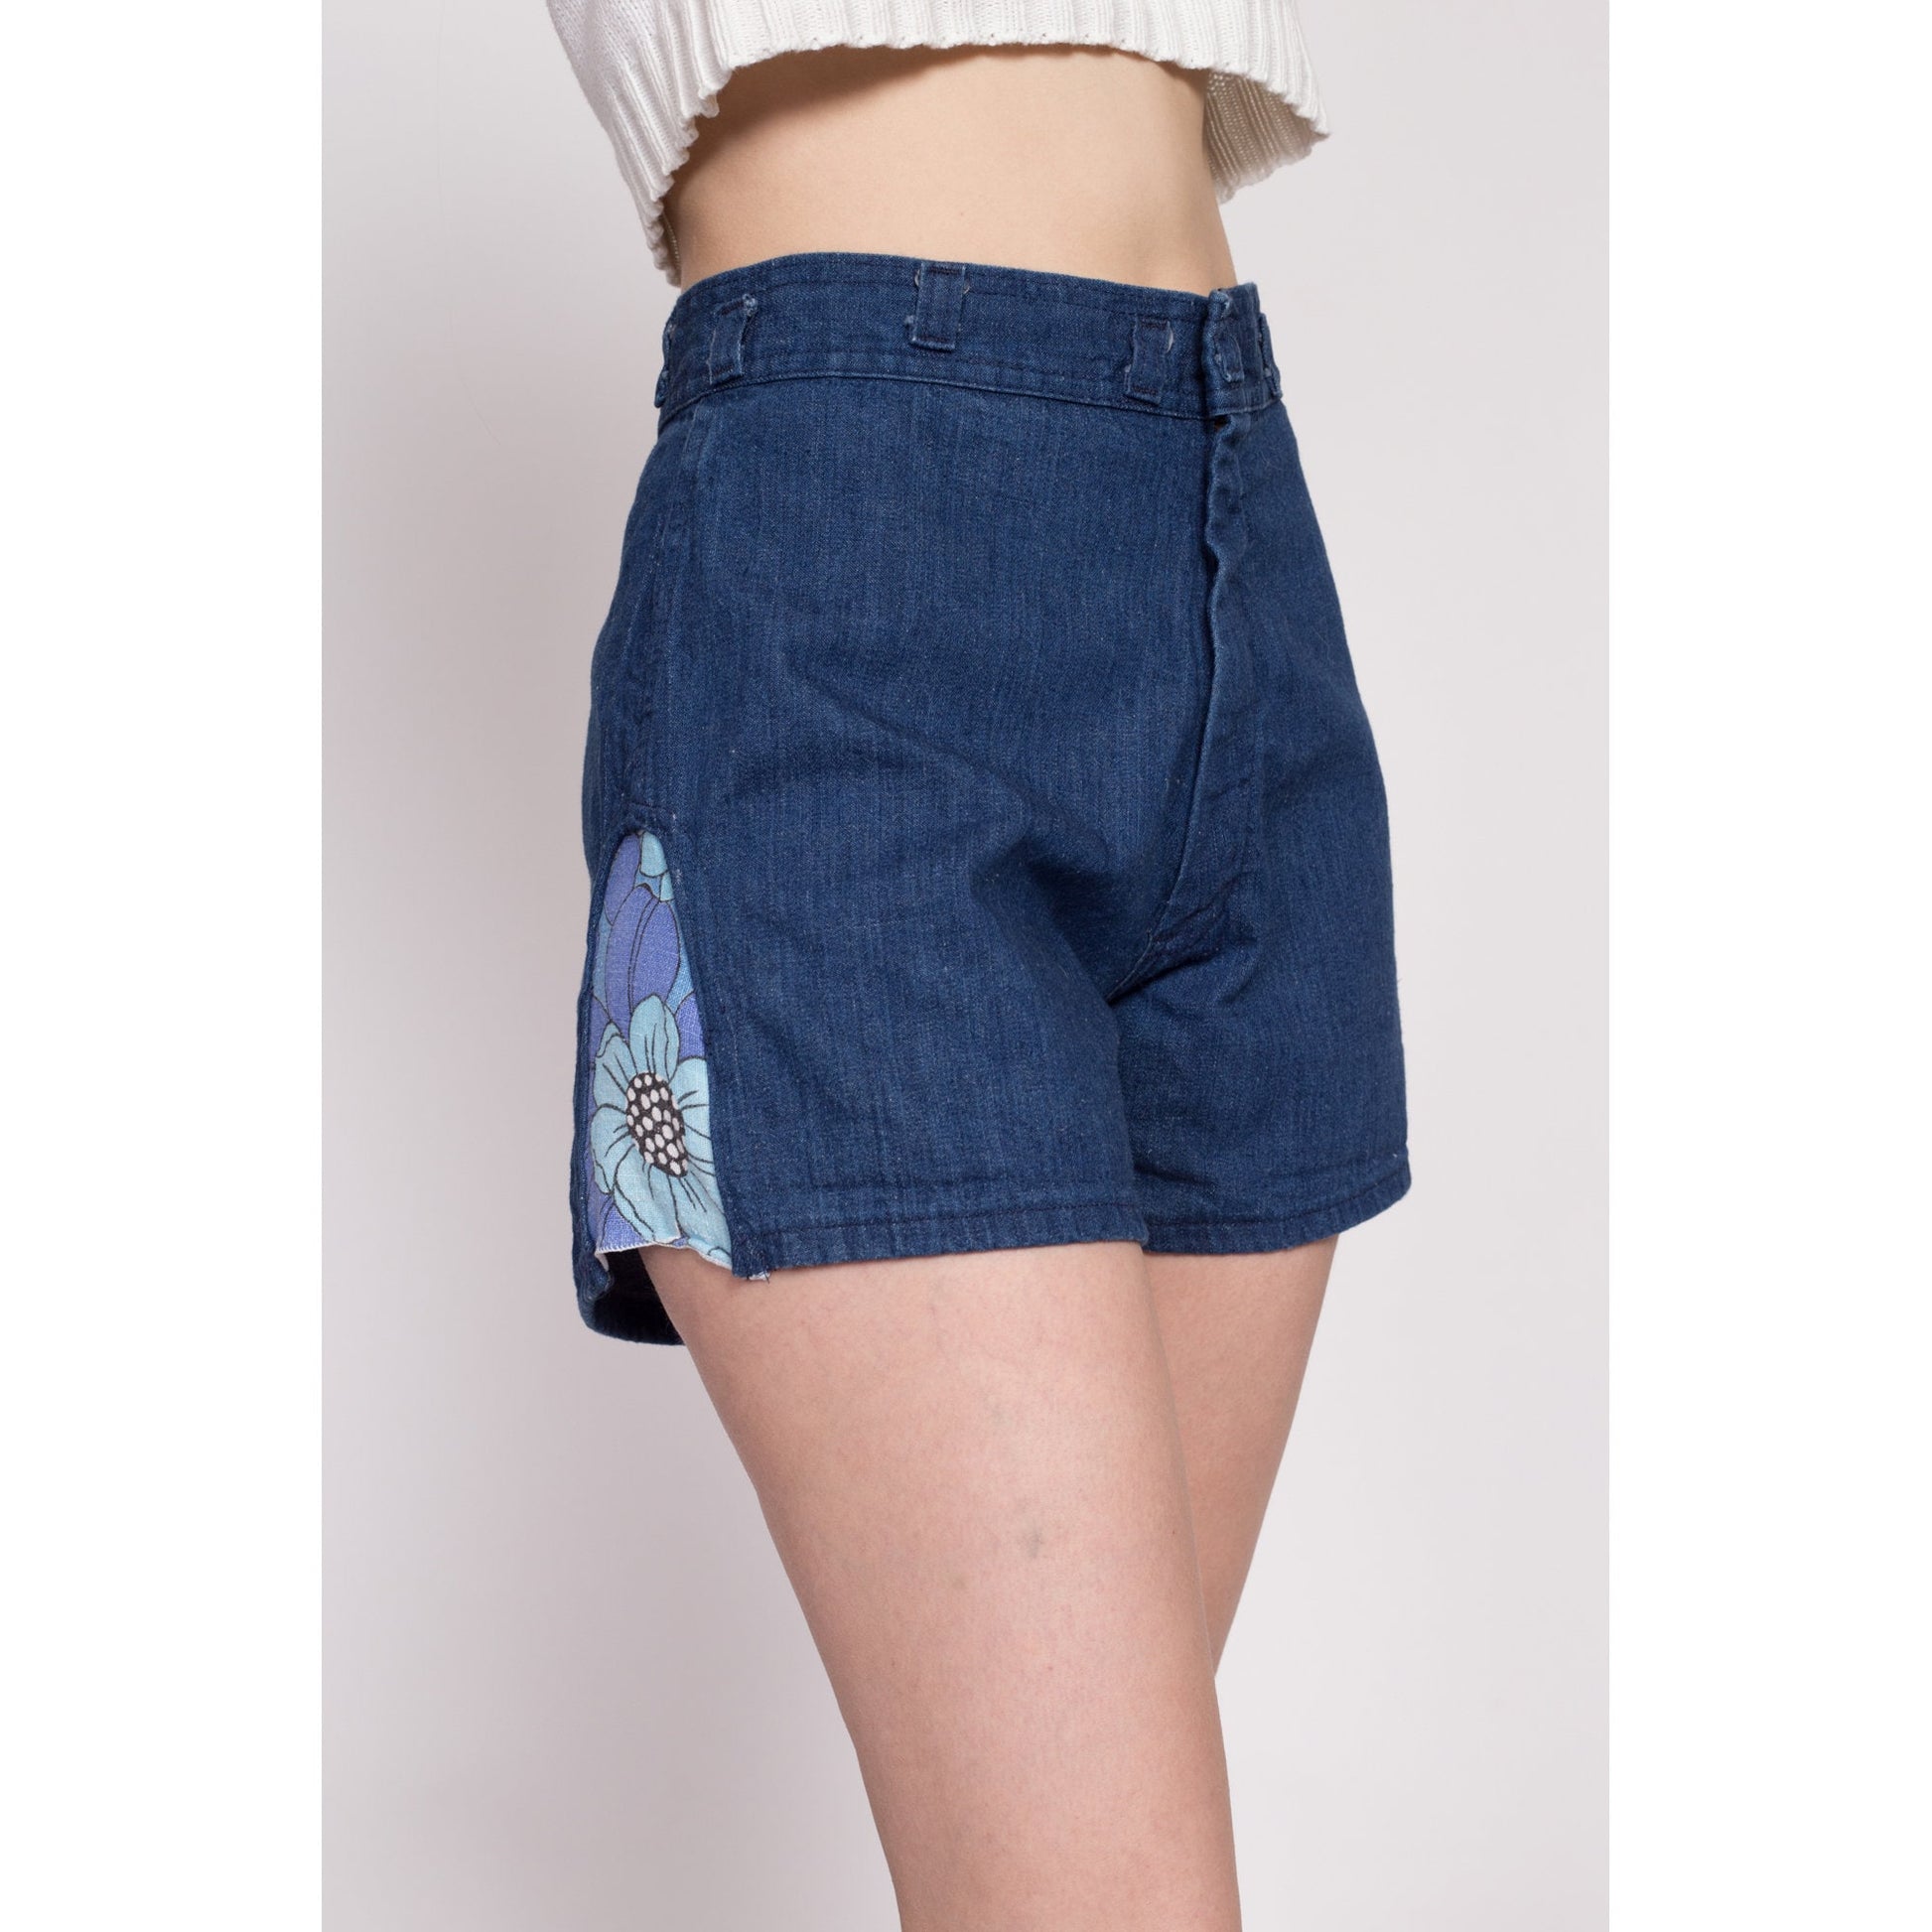 70s Denim Floral Trim Shorts - Medium, 30.5" | Vintage Dark Wash High Waisted Jean Short